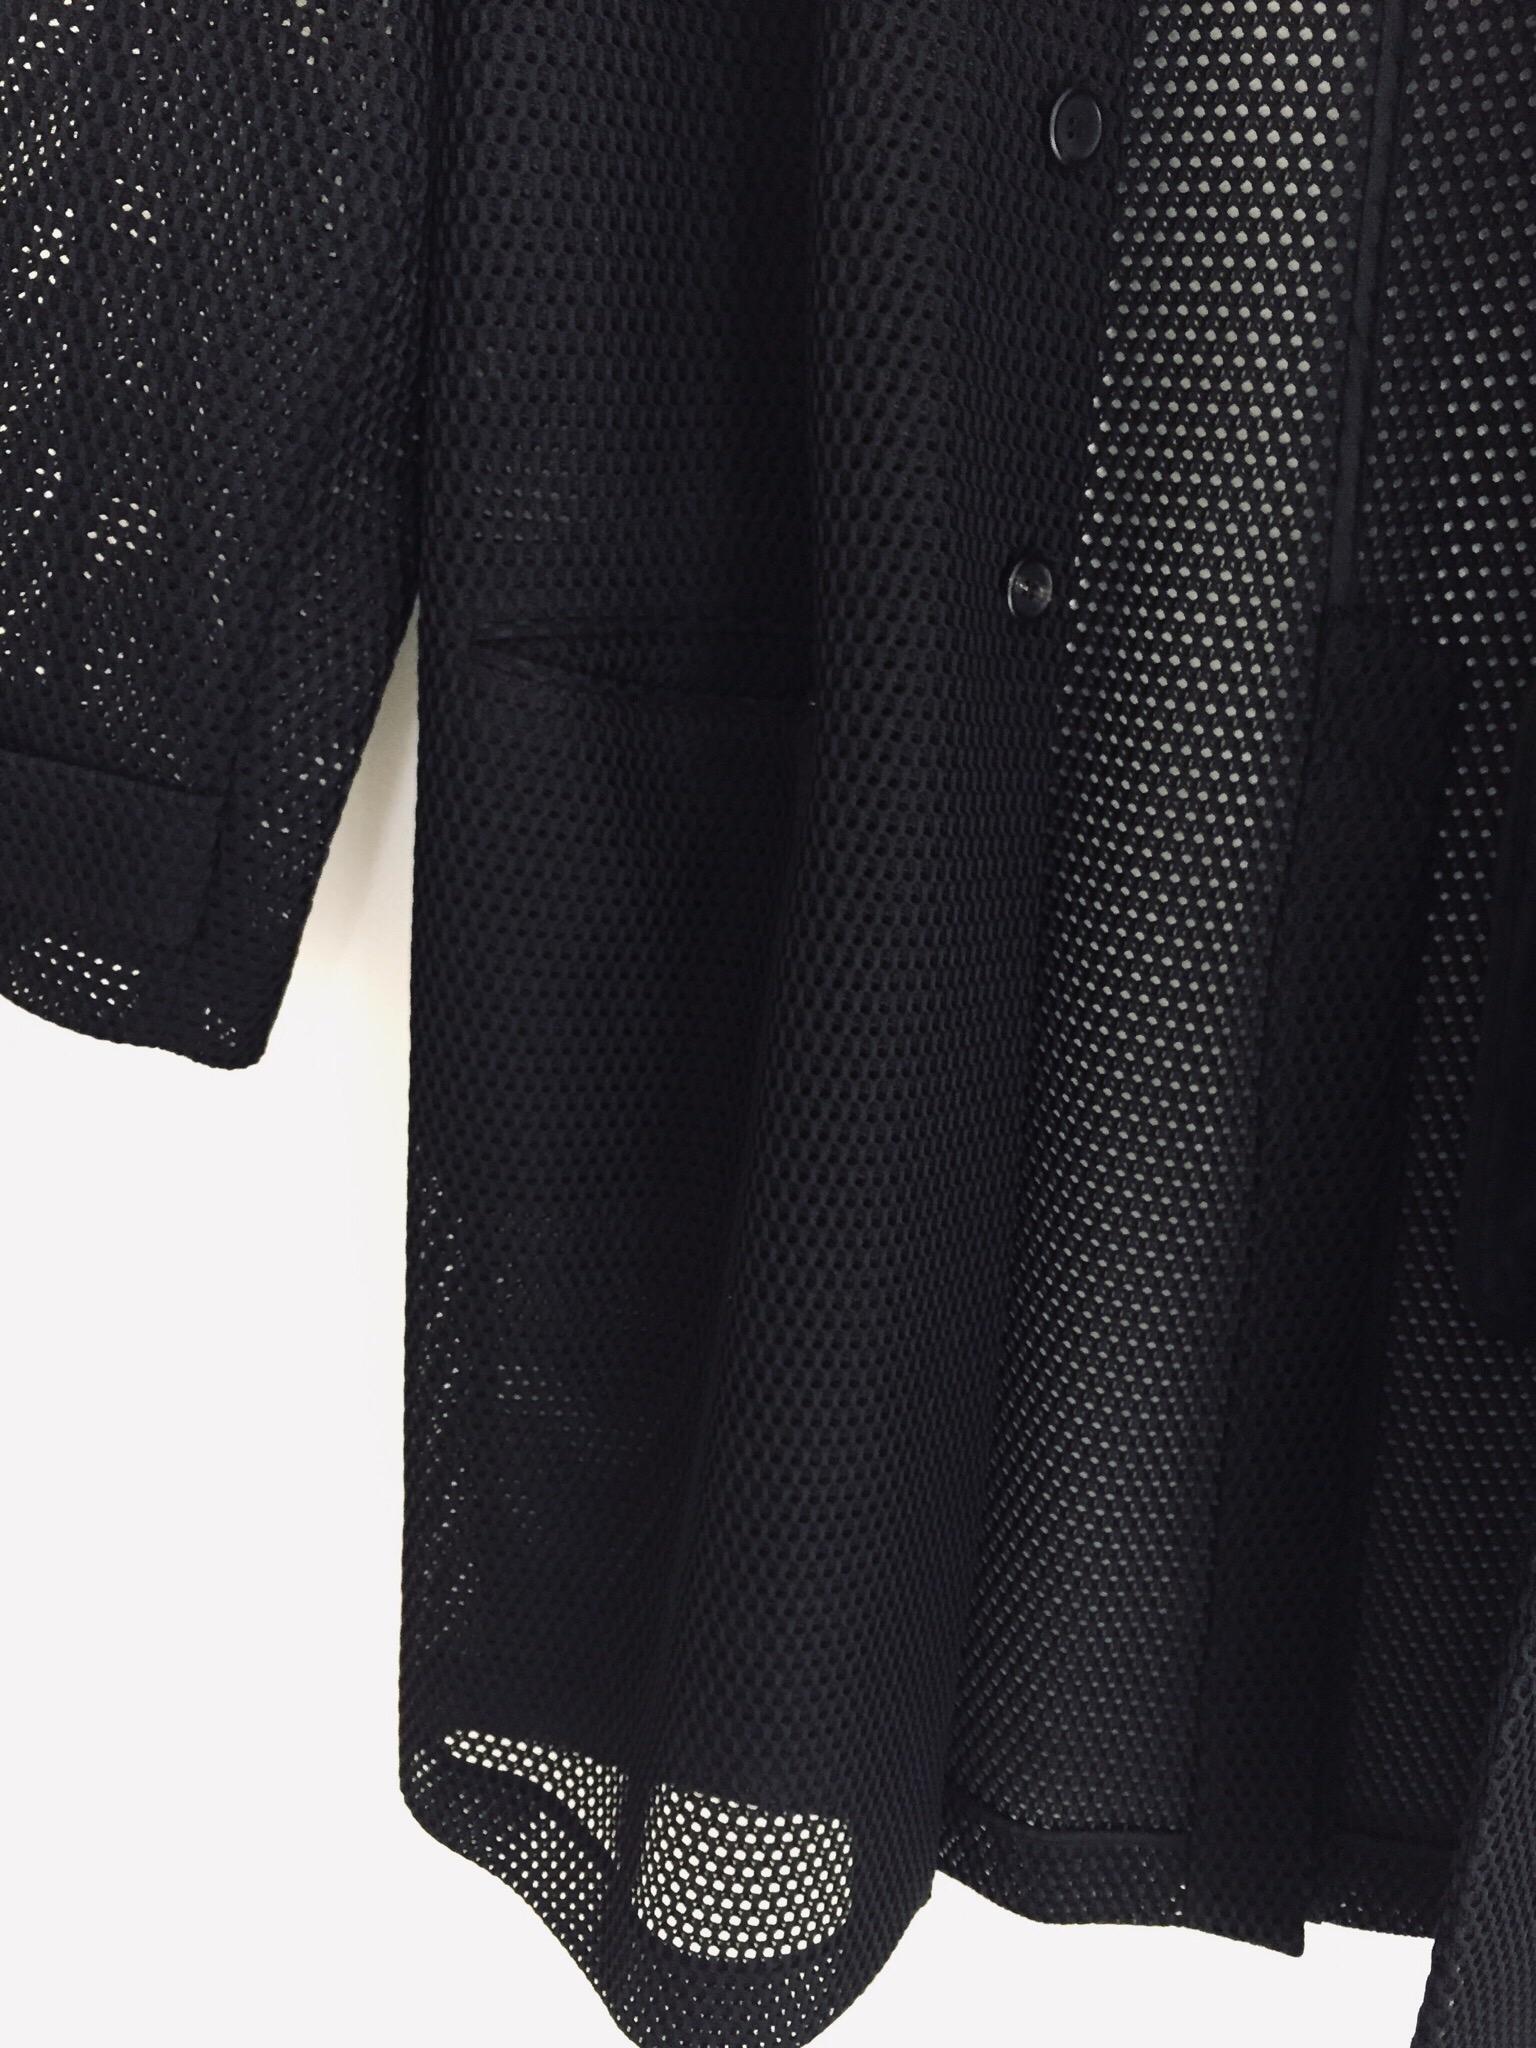 Prada Black Overcoat Made in Italy For Sale 10